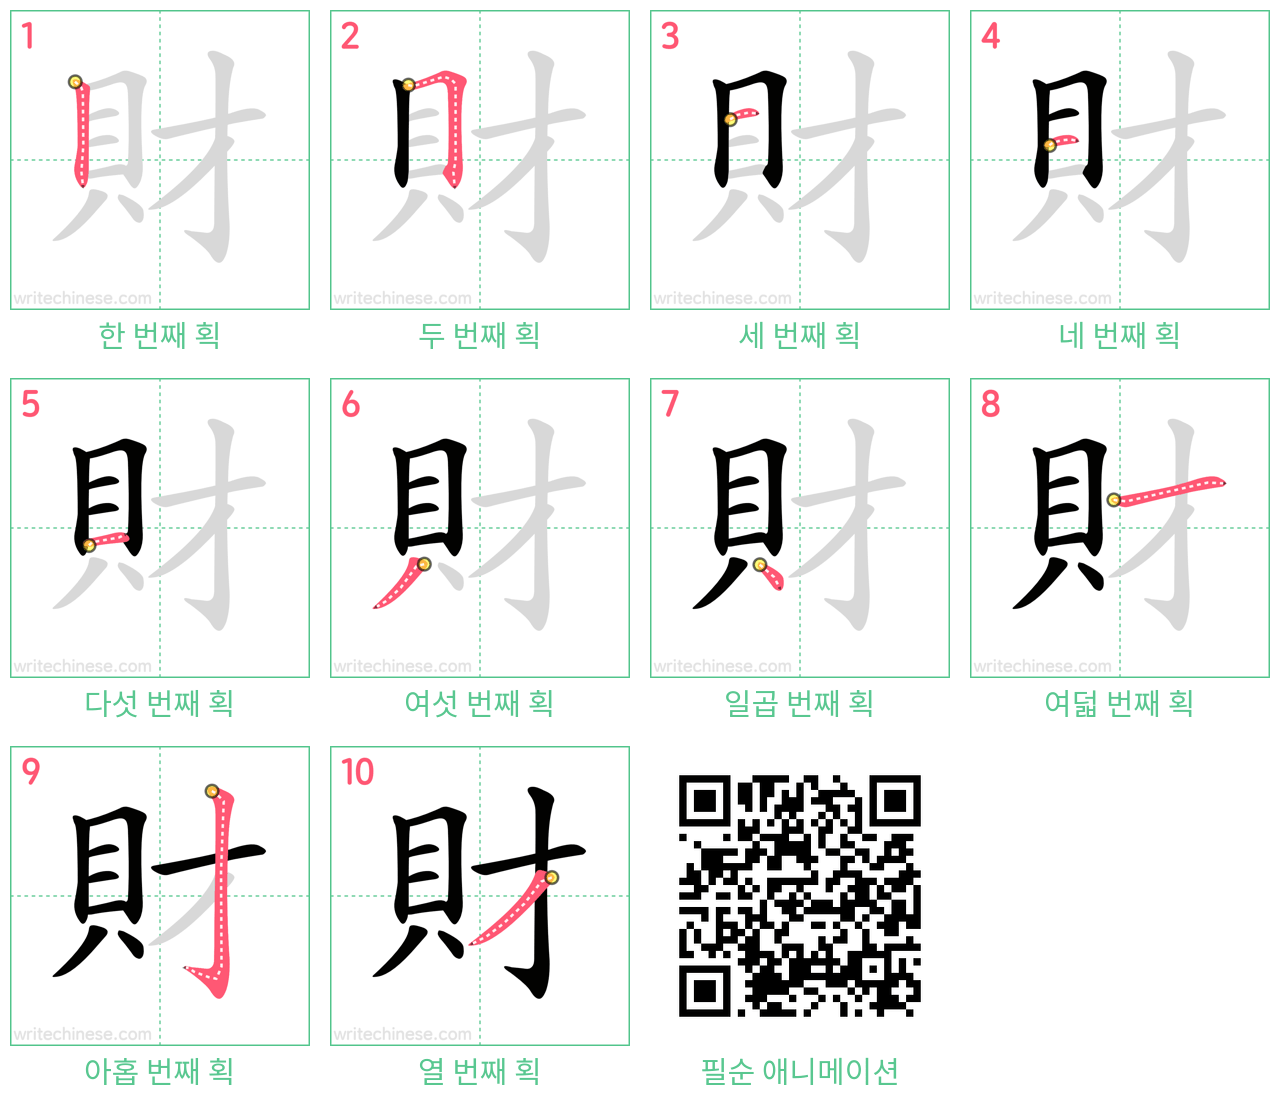 財 step-by-step stroke order diagrams